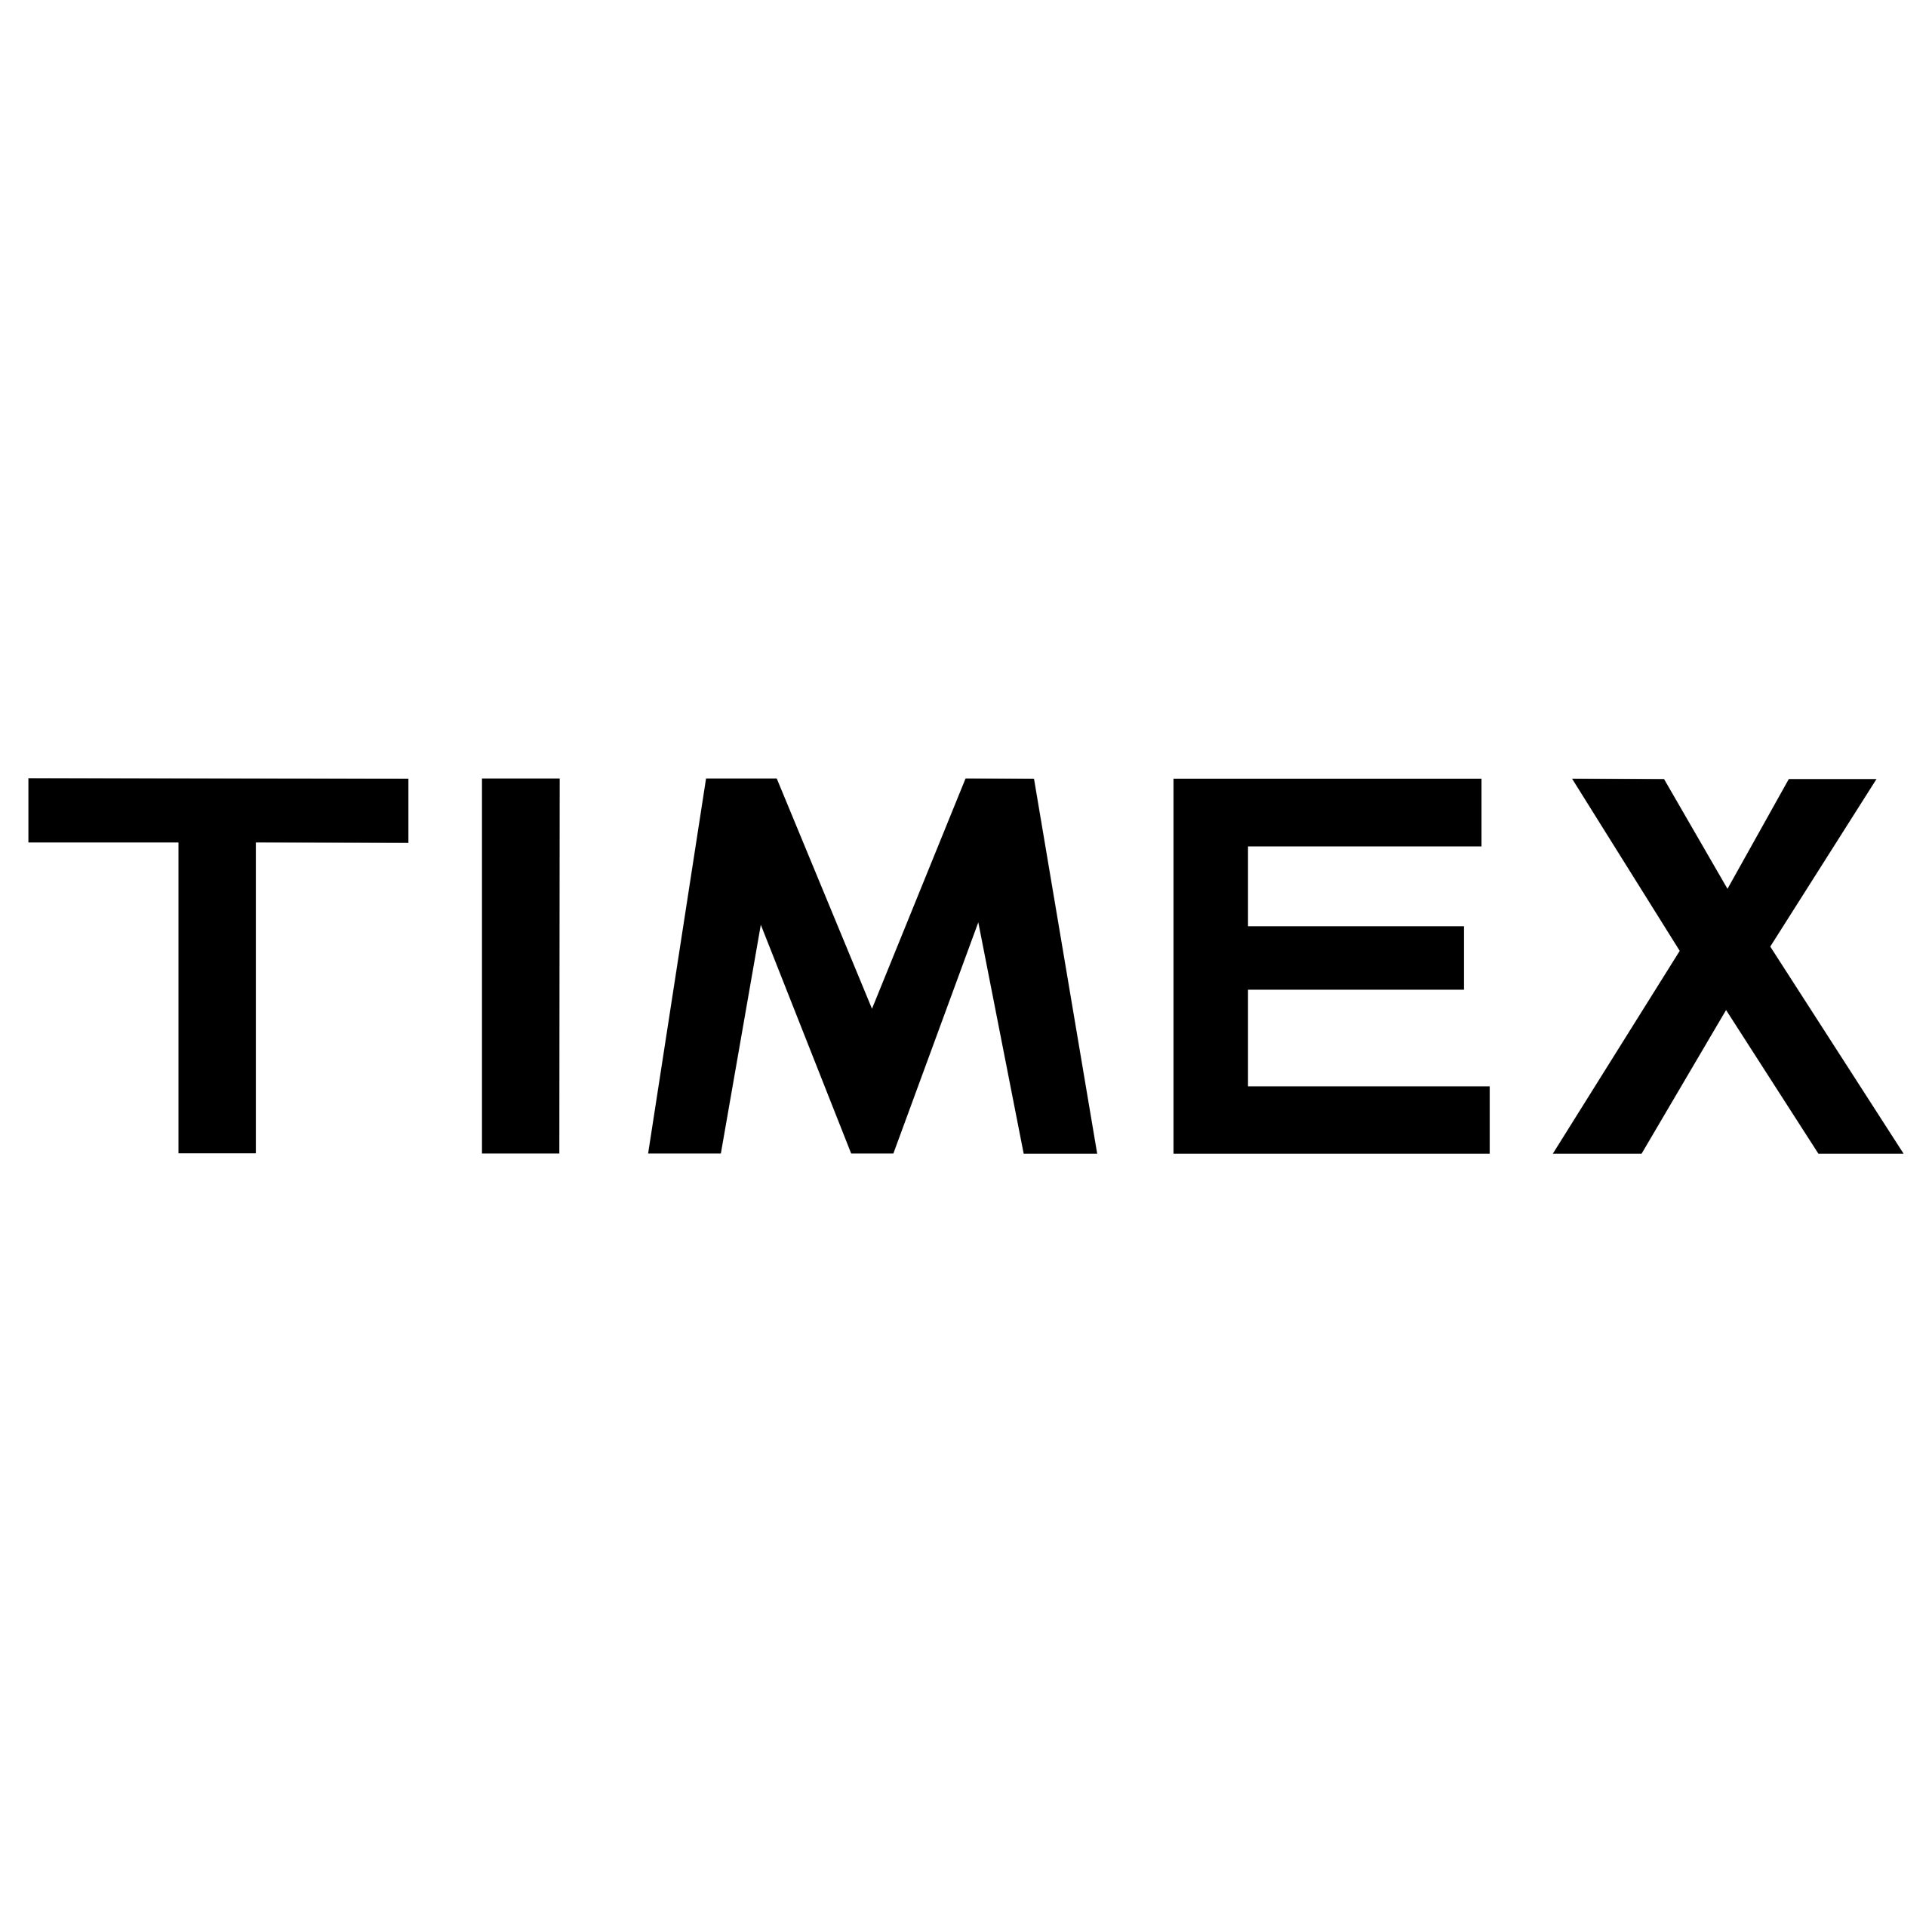 timex logo